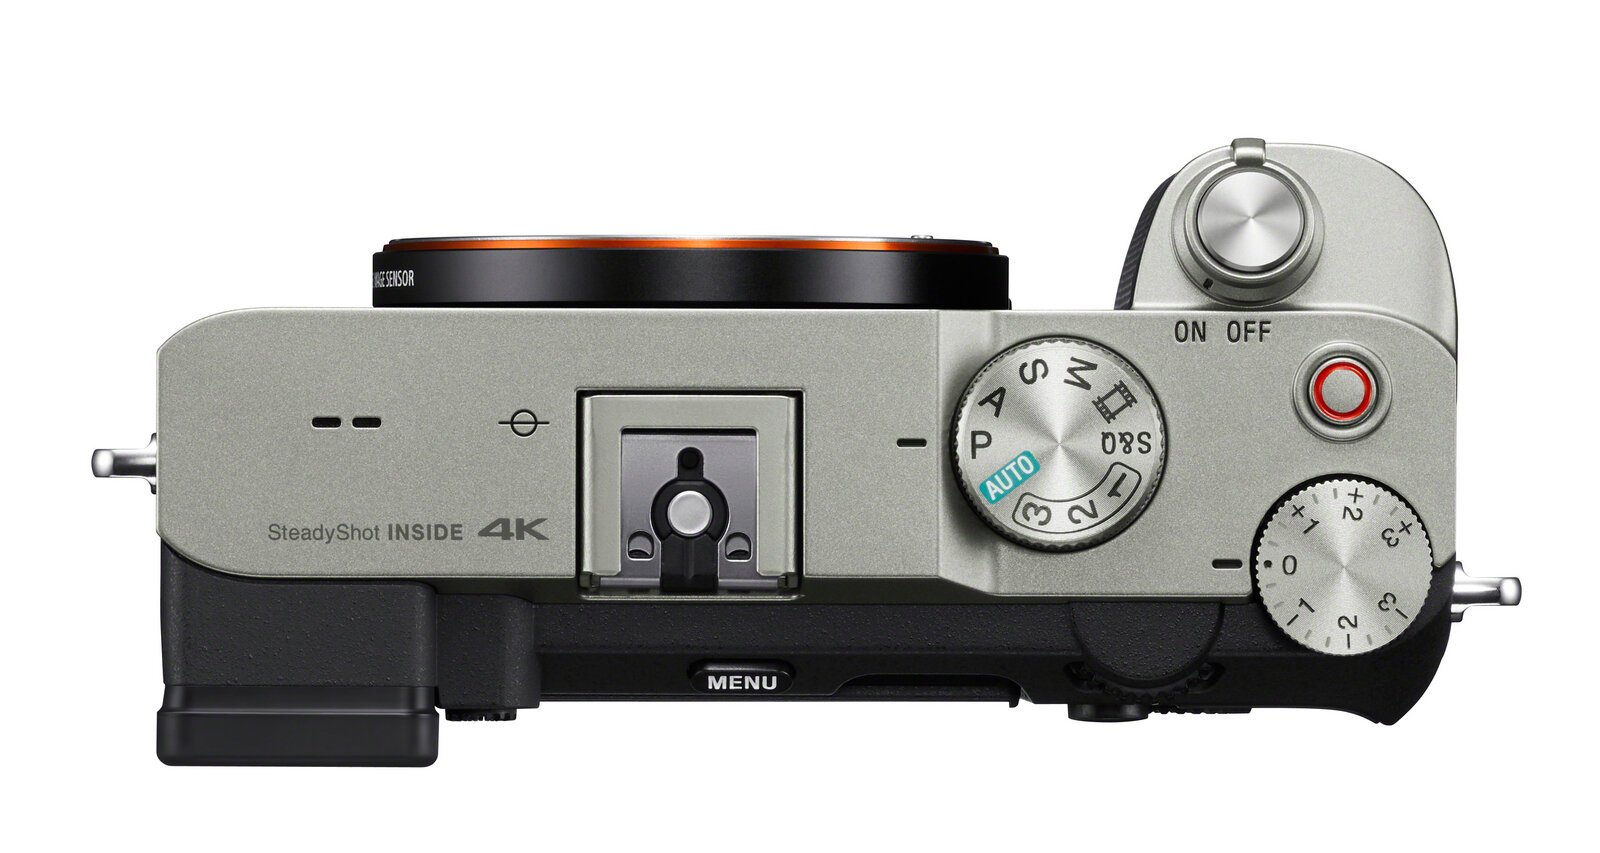 Η Sony a7C είναι το «μικρότερο και ελαφρύτερο Full-frame φωτογραφικό σύστημα στον κόσμο»